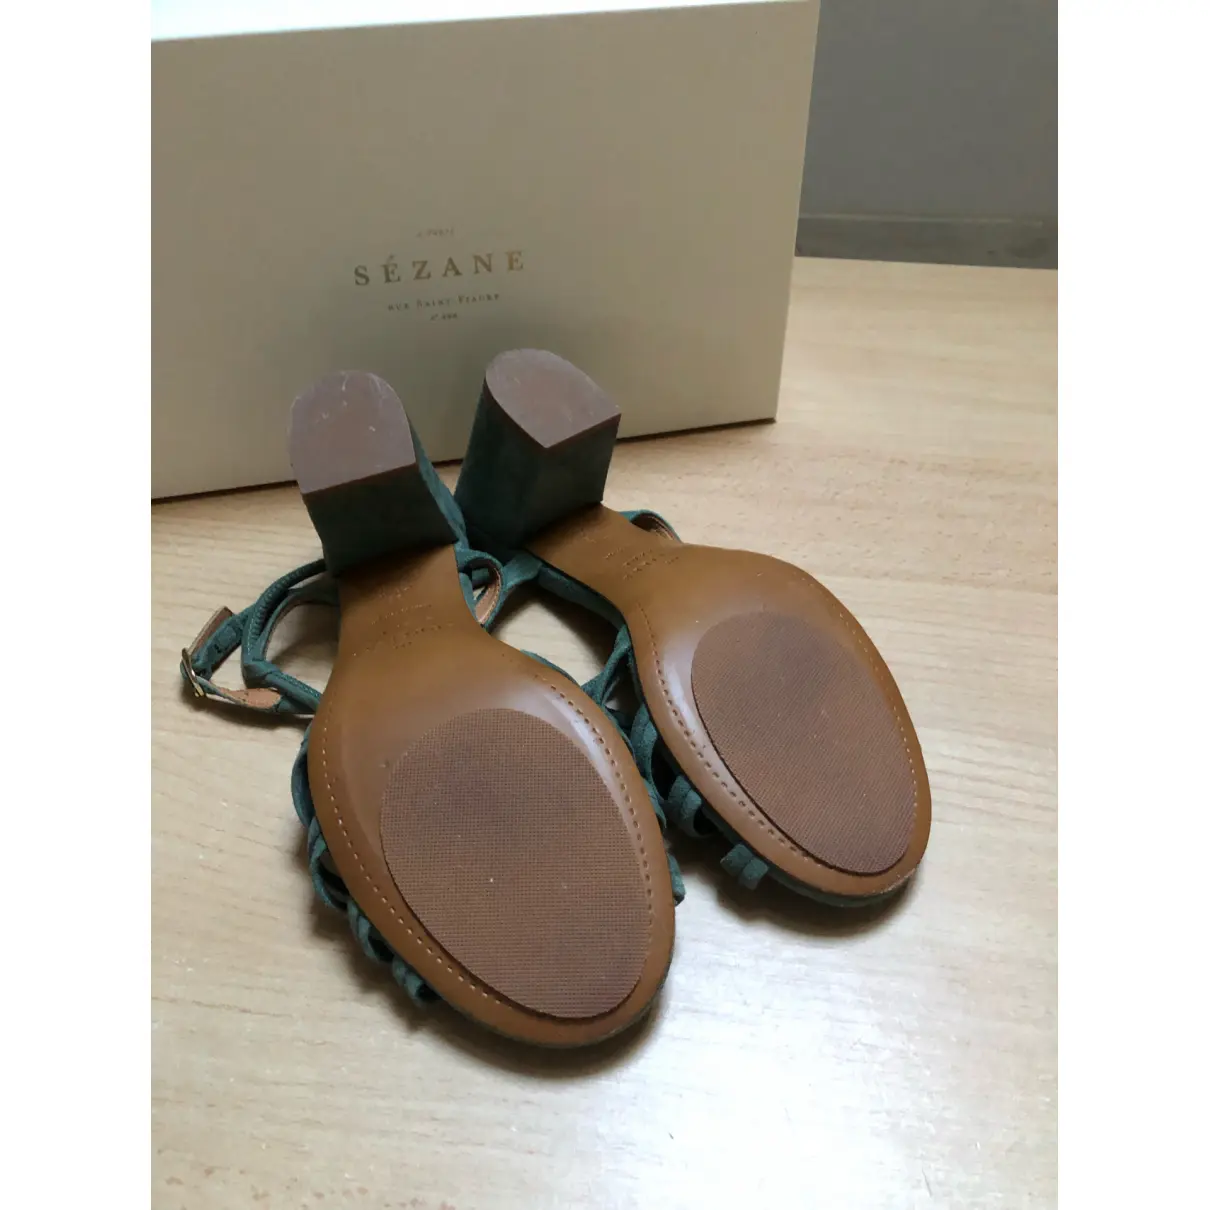 Leather sandals Sézane